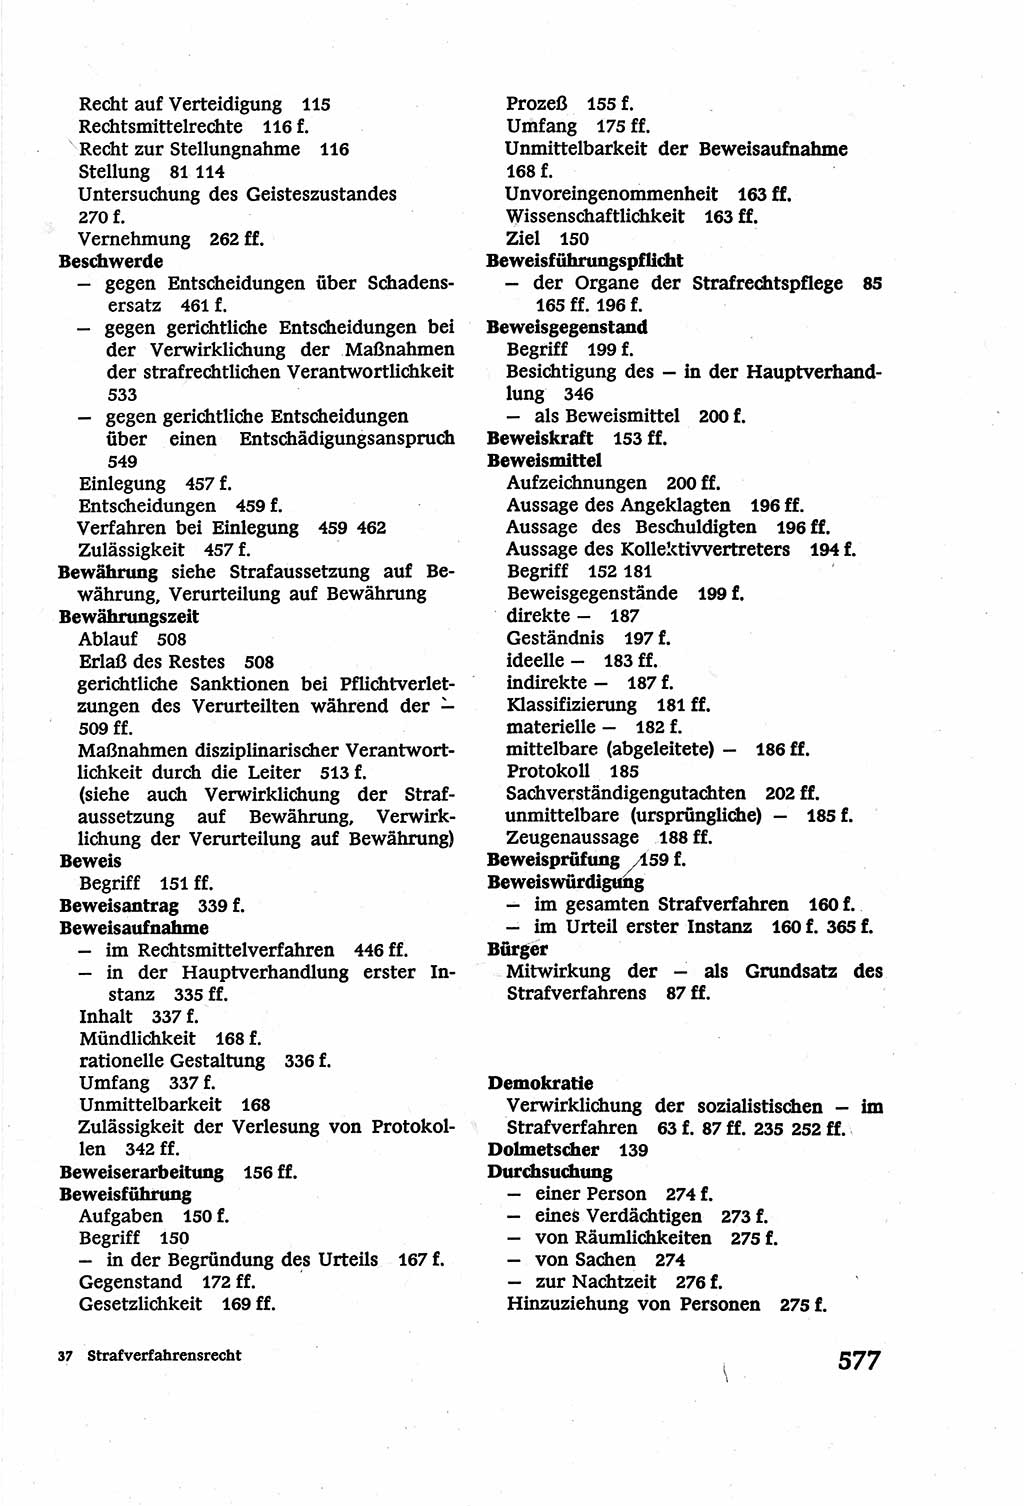 Strafverfahrensrecht [Deutsche Demokratische Republik (DDR)], Lehrbuch 1977, Seite 577 (Strafverf.-R. DDR Lb. 1977, S. 577)